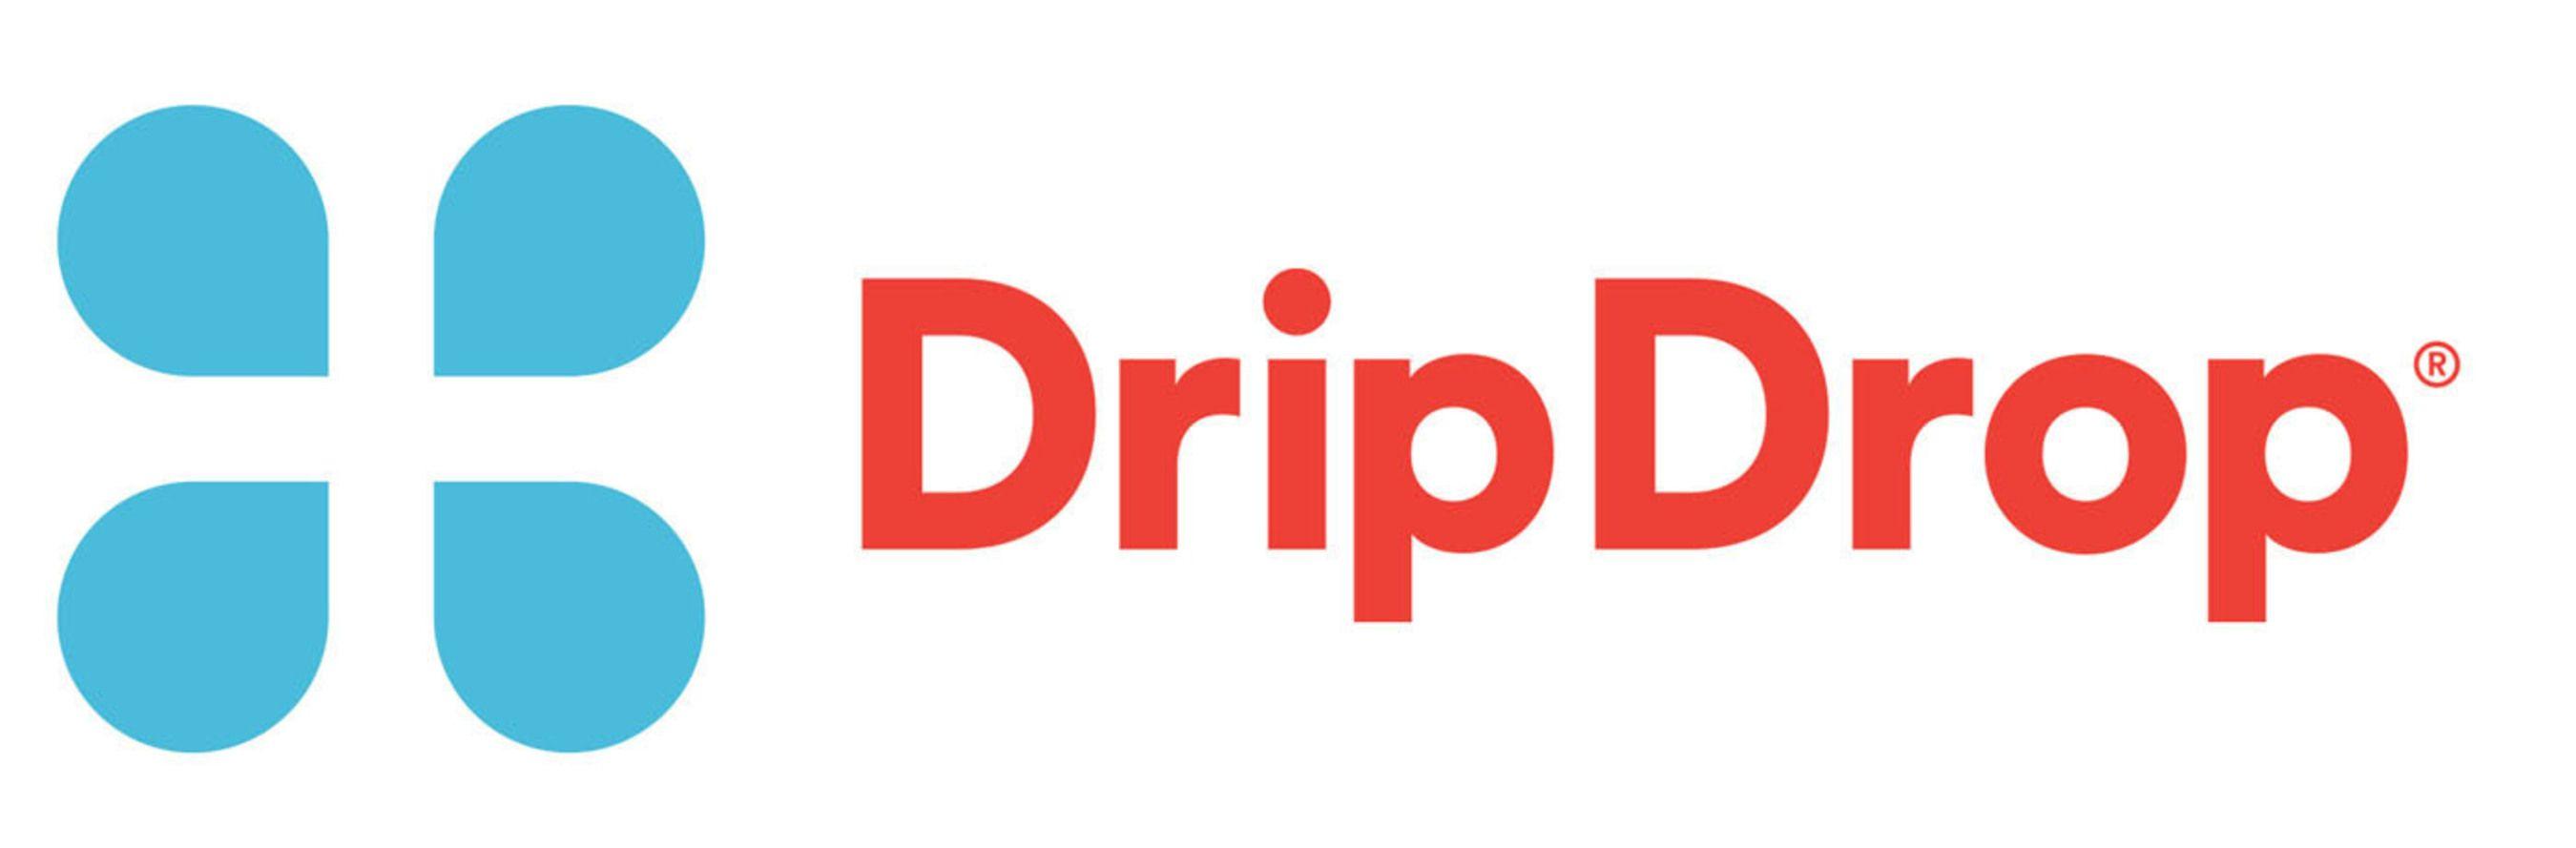 Drip Drop Logo - Drip Drop Inc. appoints Major General James 